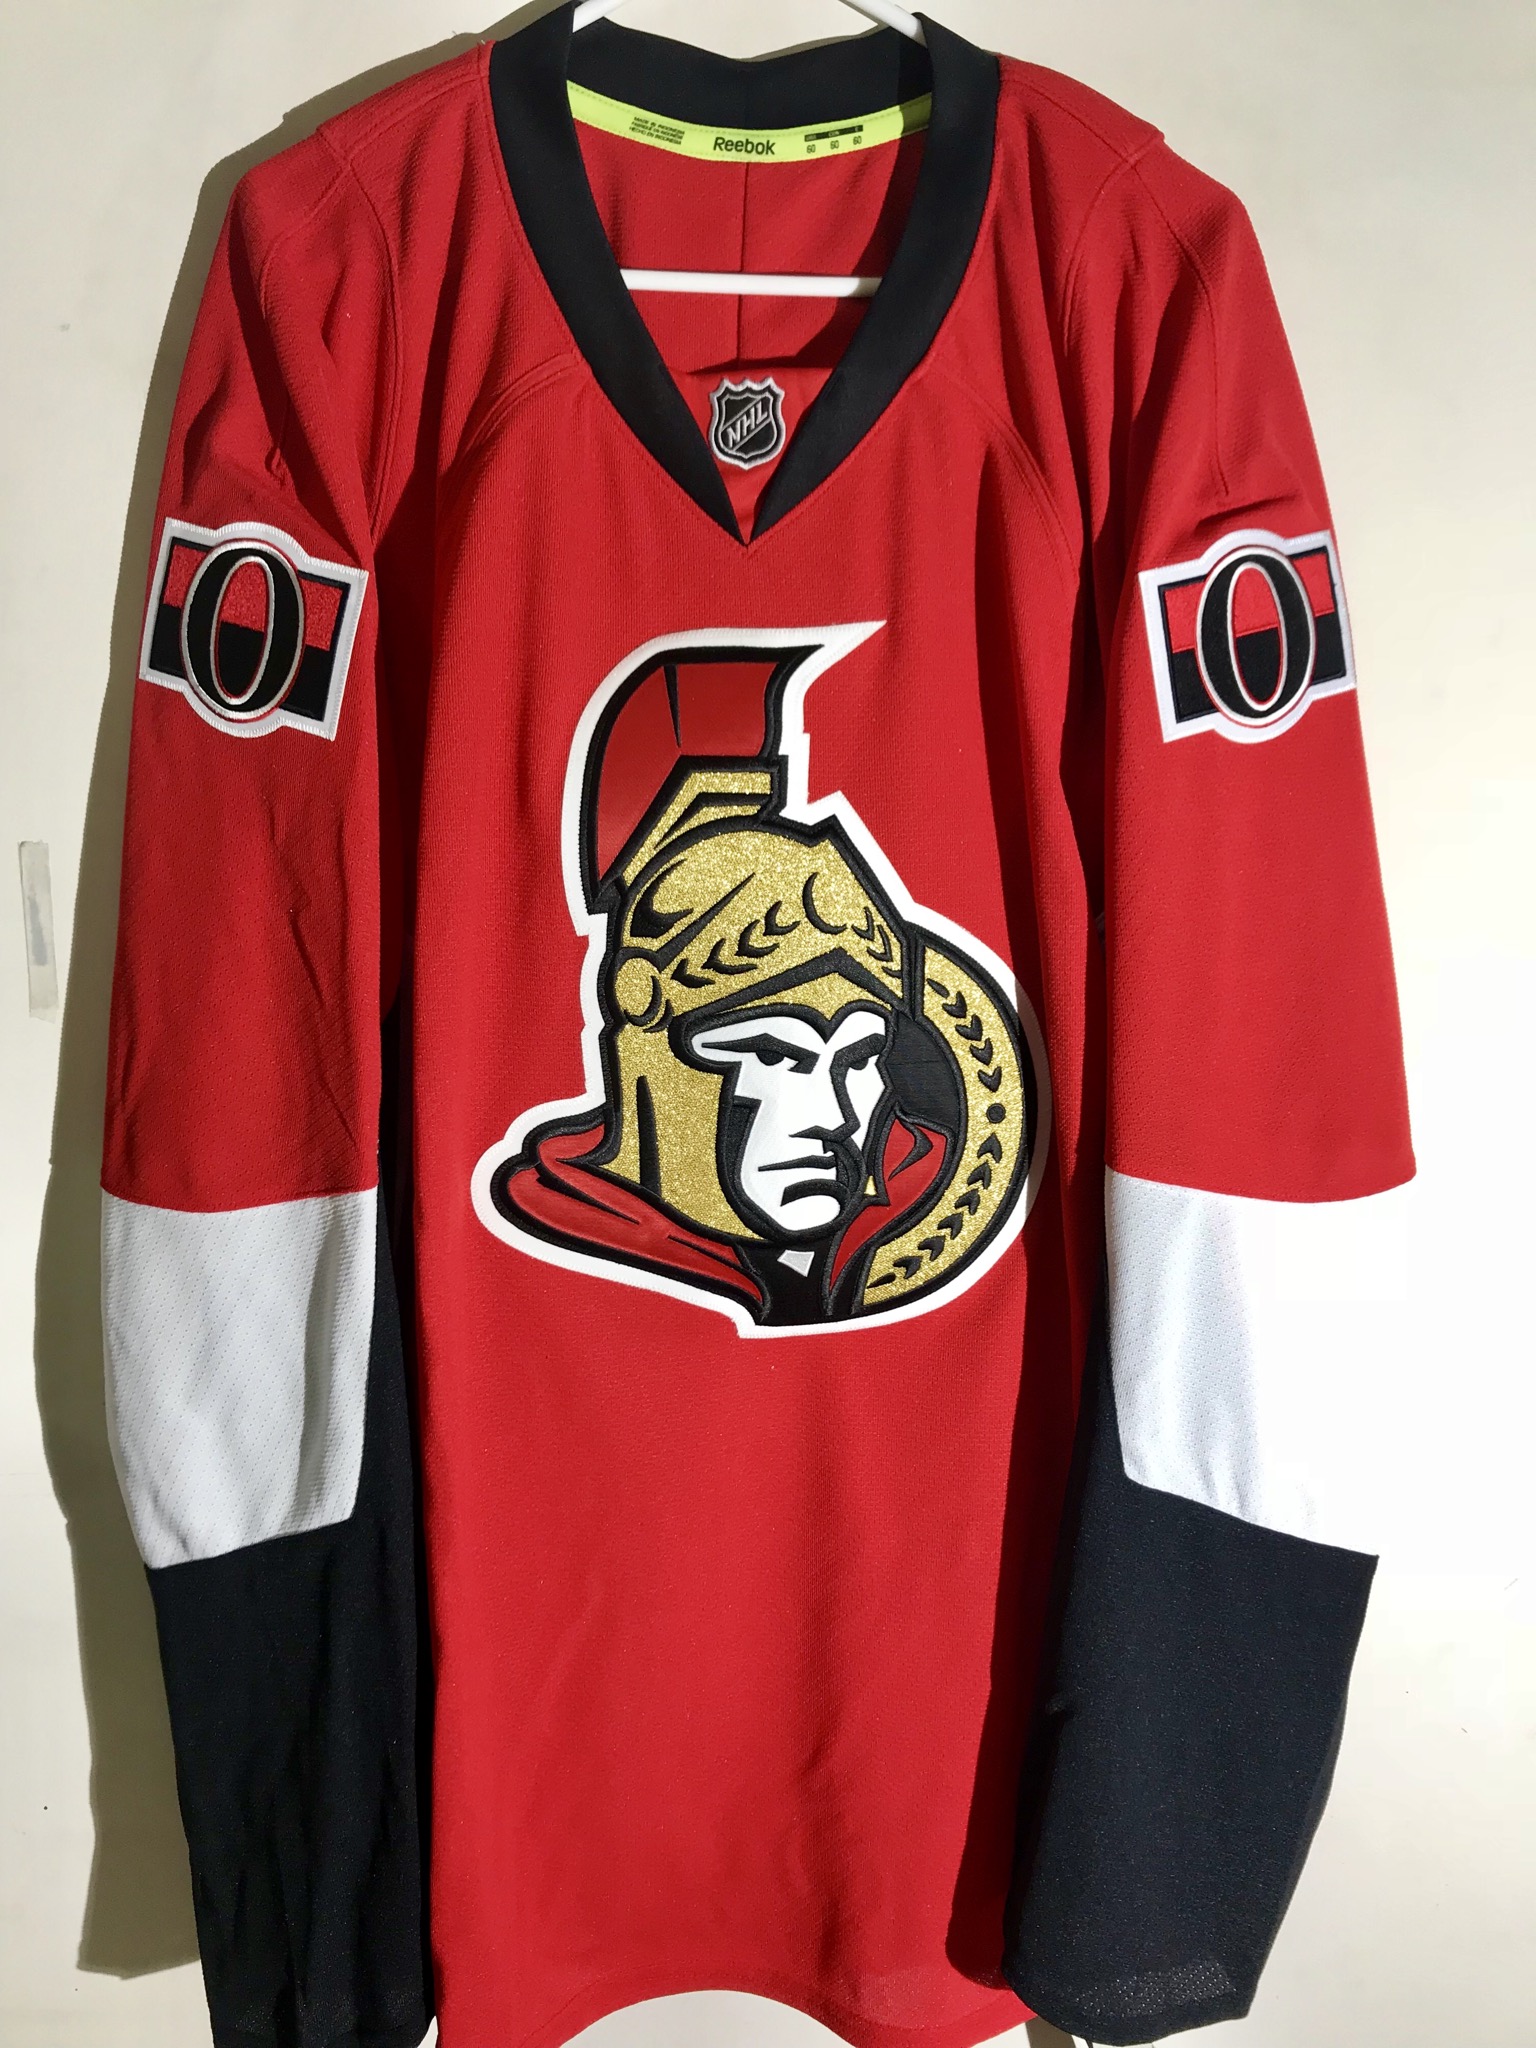 Authentic NHL Jersey Ottawa Senators 